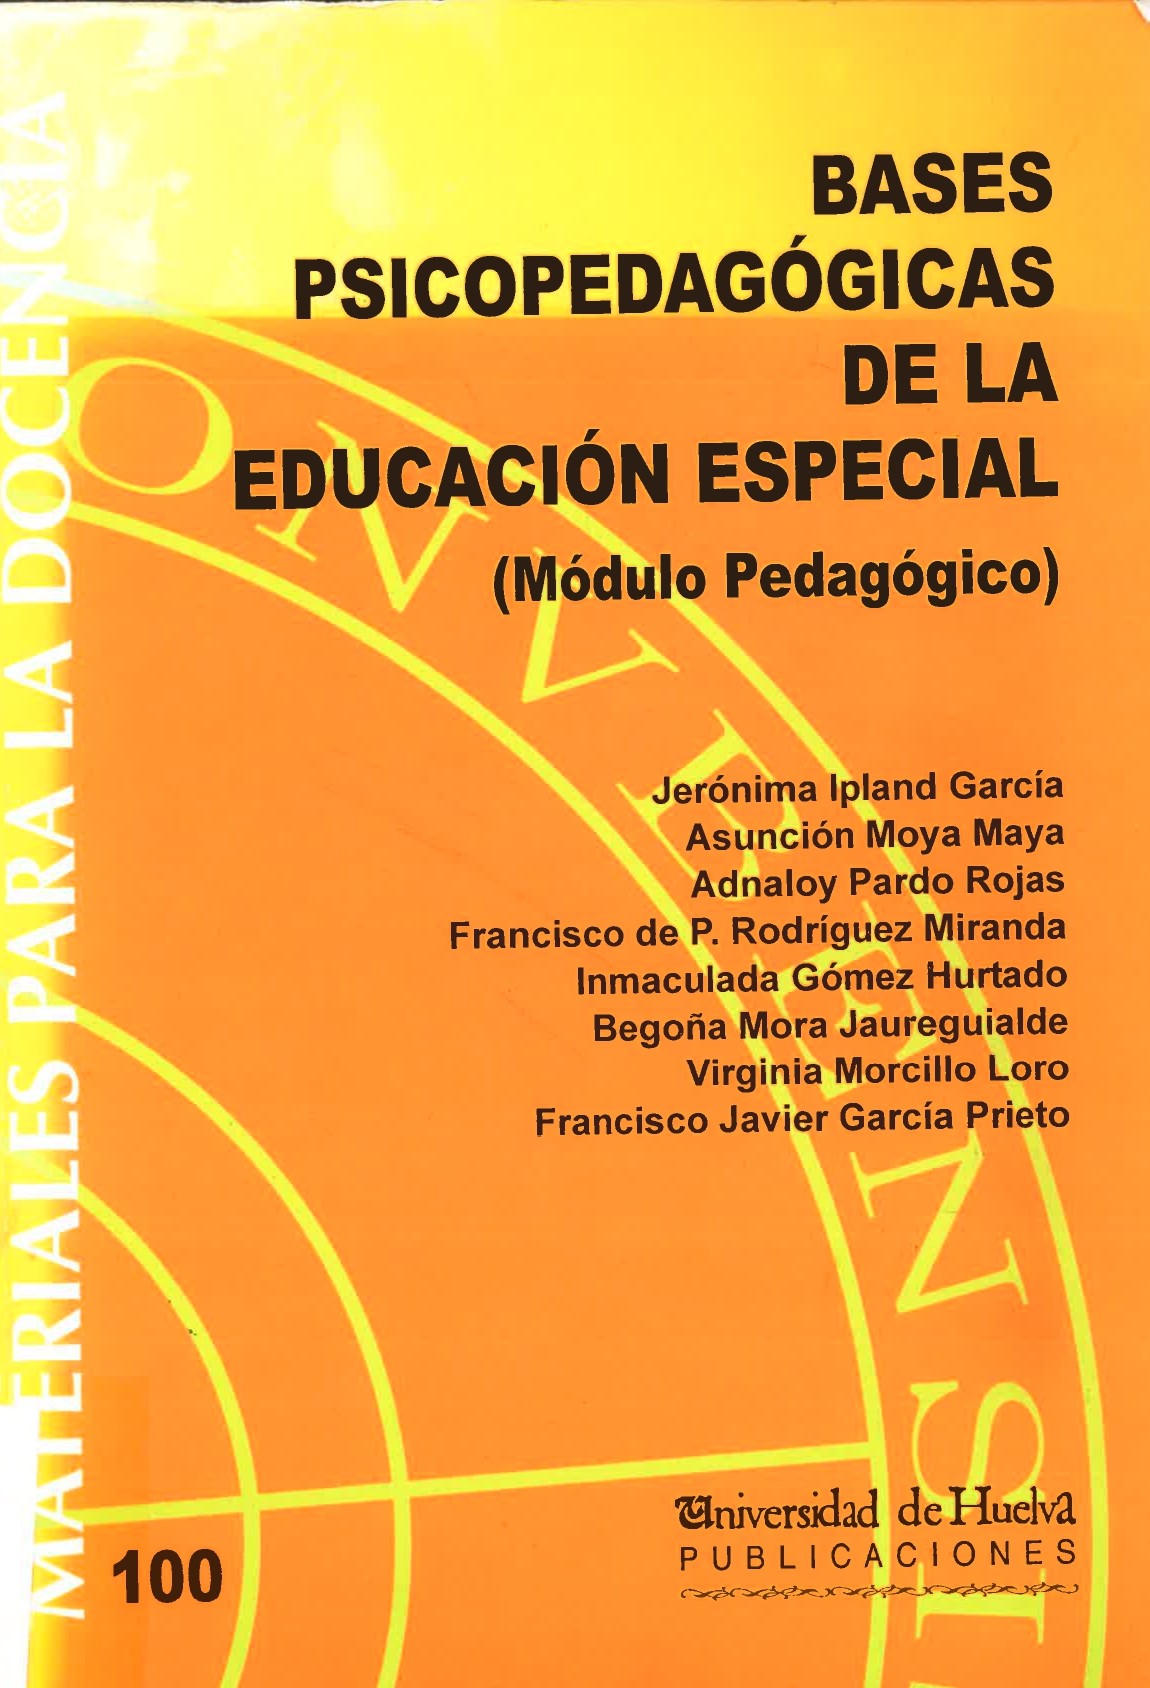 Imagen de portada del libro Bases Psicopedagógicas de la Educación Especial